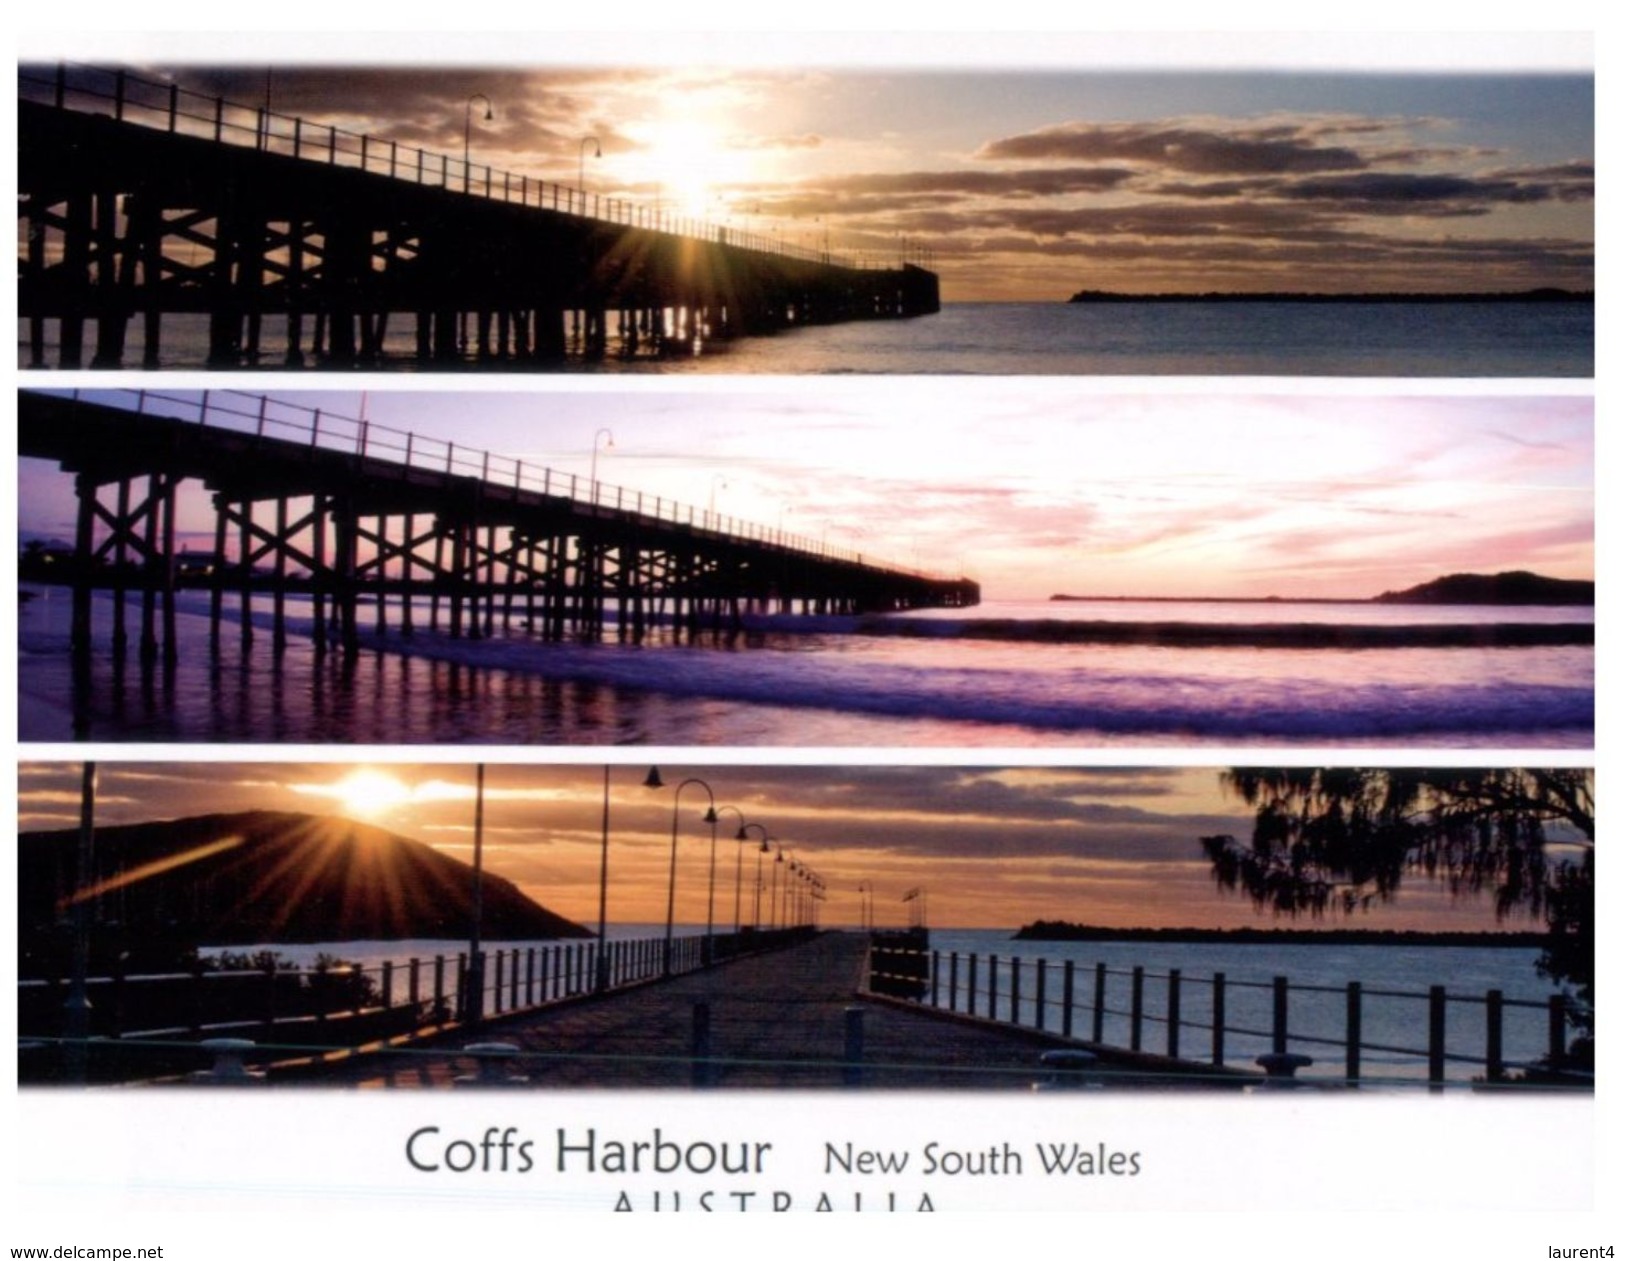 (206) Australia - NSW - Coffs Harbour Jetty - Coffs Harbour